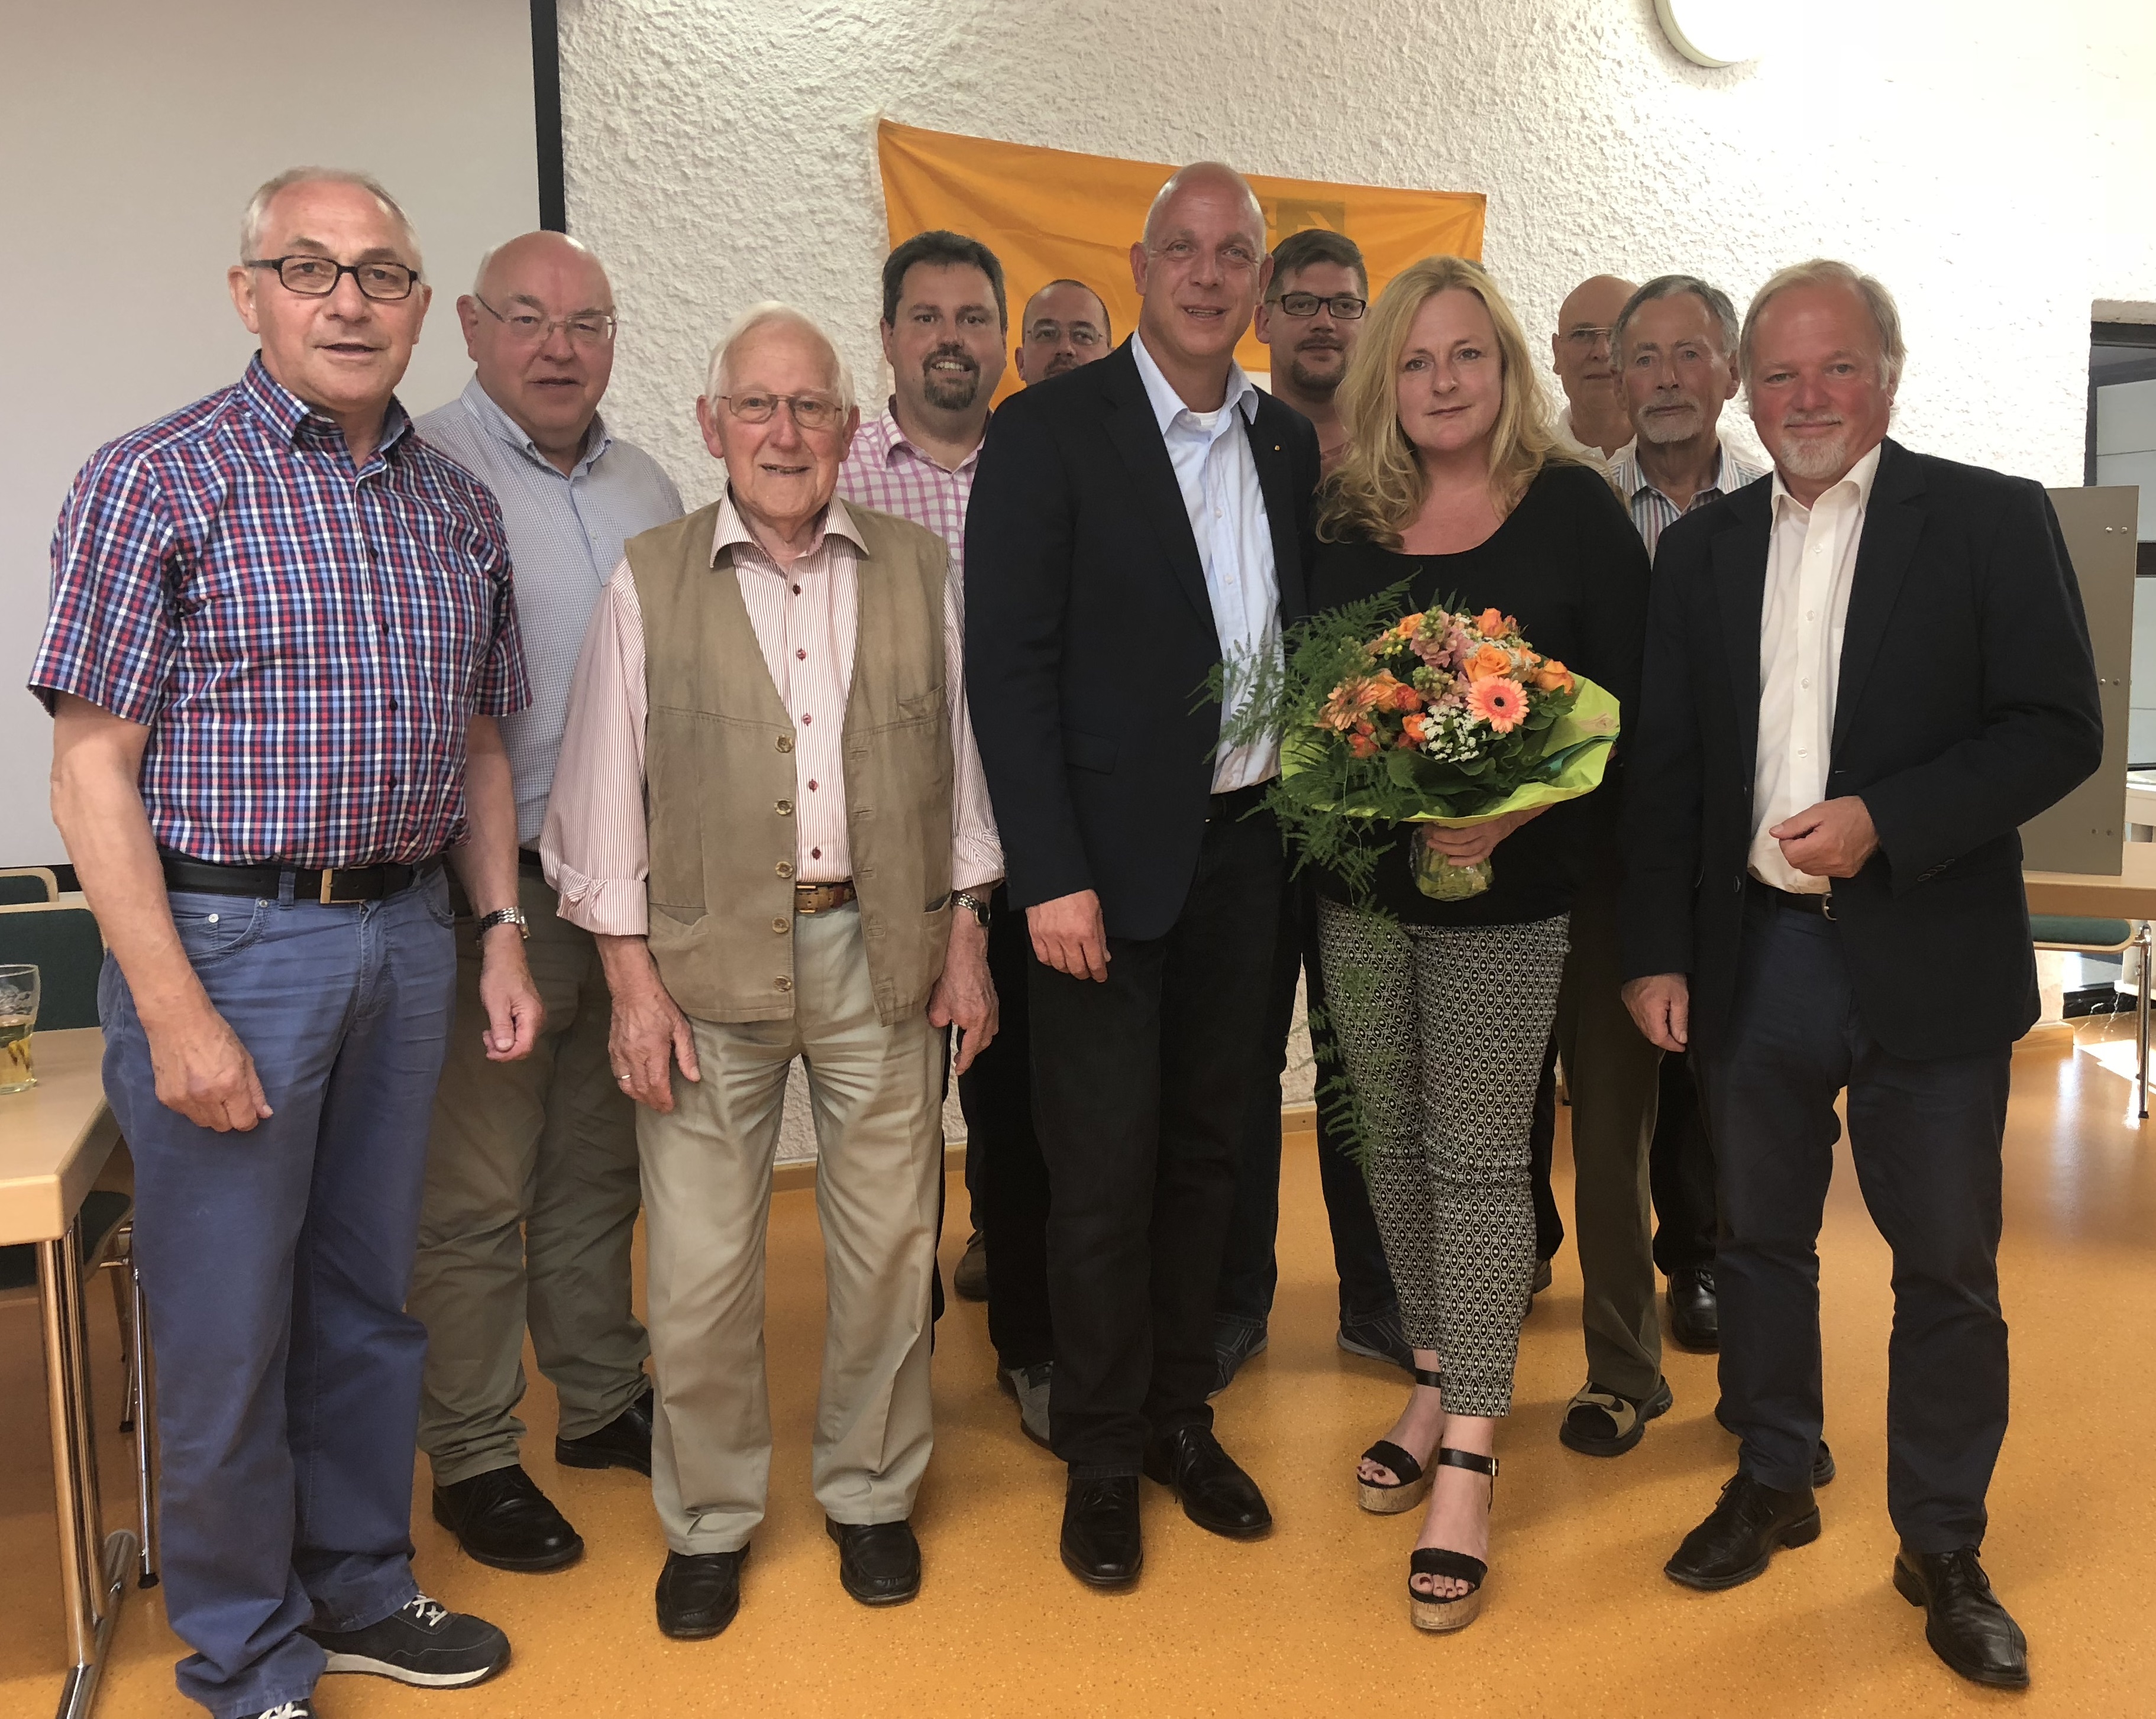 Das Bild zeigt den amtierenden CDU Bürgermeister Josef Rüddel (3.v.li), den Bürgermeister der Verbandsgemeinde Asbach (4.v.li), Bürgermeisterkandidaten Martin Buchholz (5.v.li) mit Lebensgefährtin Antje Stascheit und Vorstandskollegen.